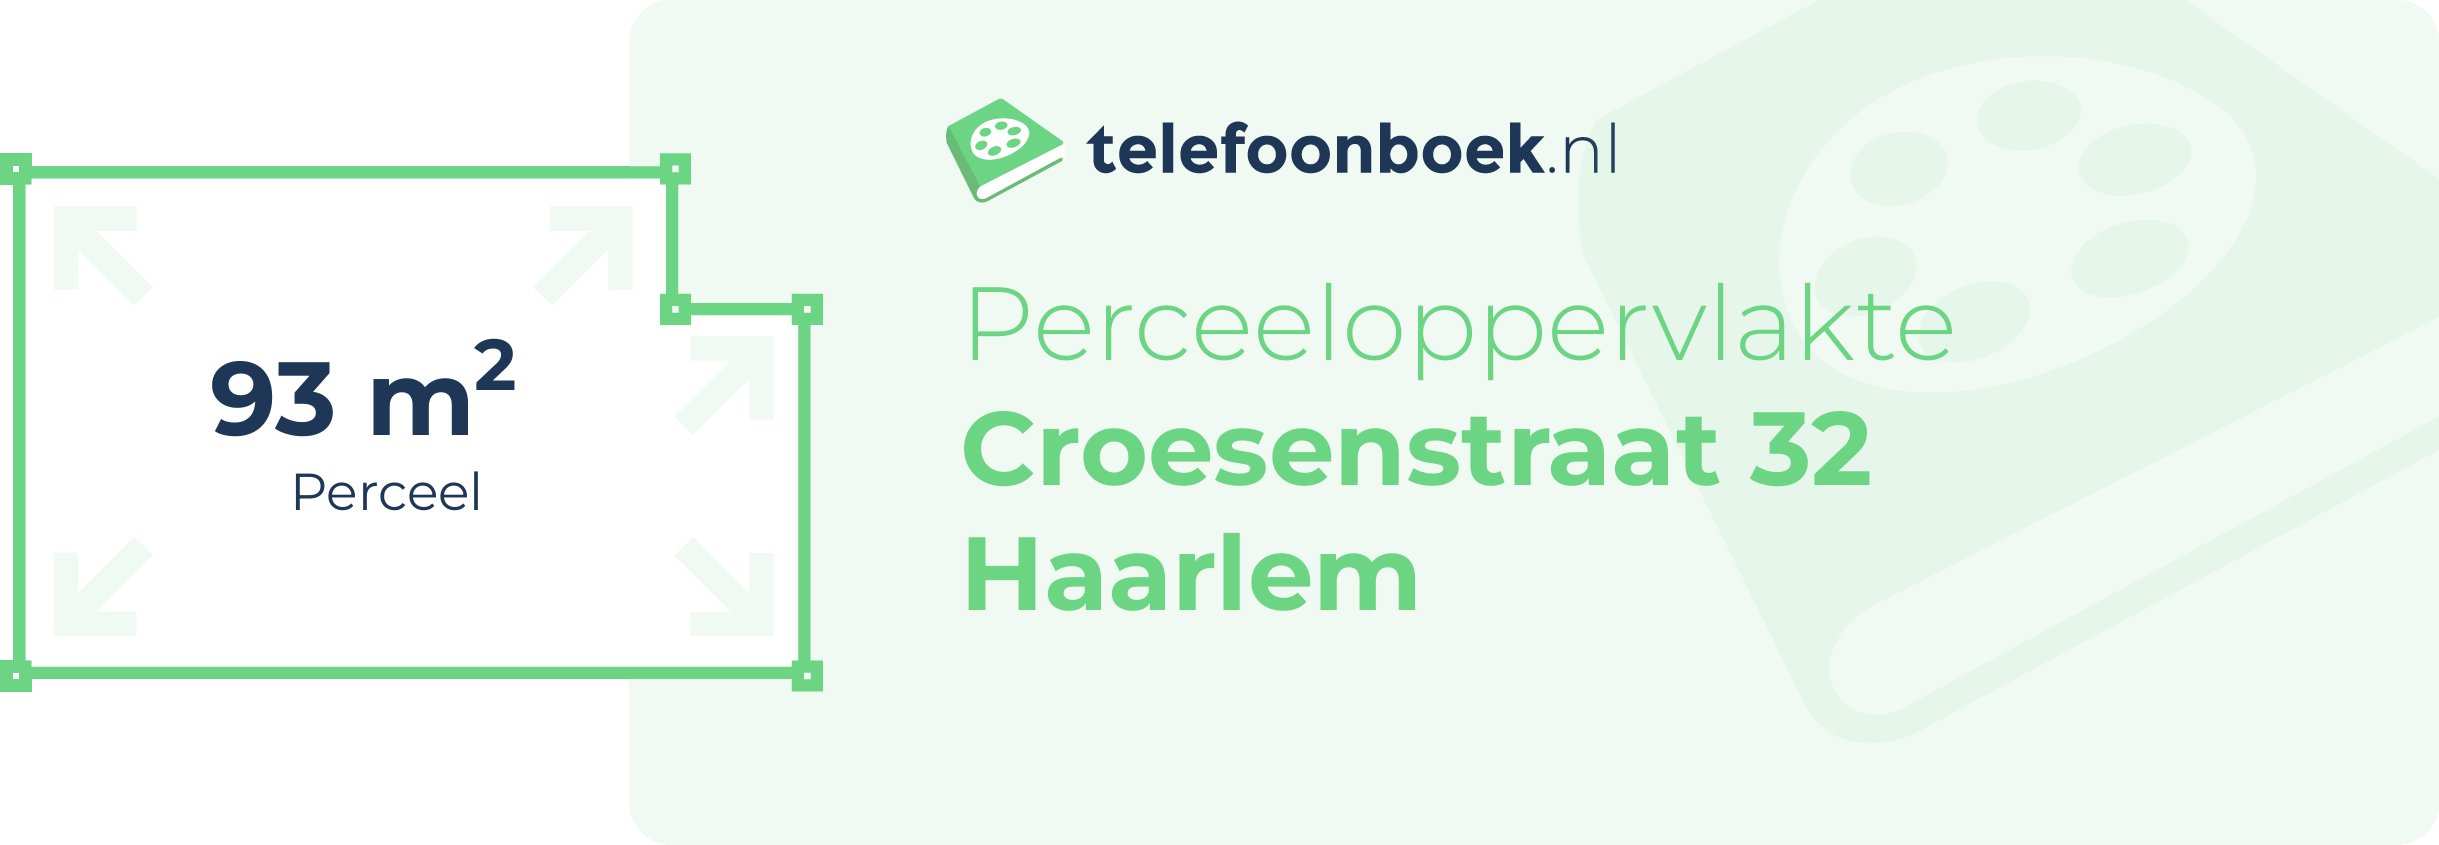 Perceeloppervlakte Croesenstraat 32 Haarlem